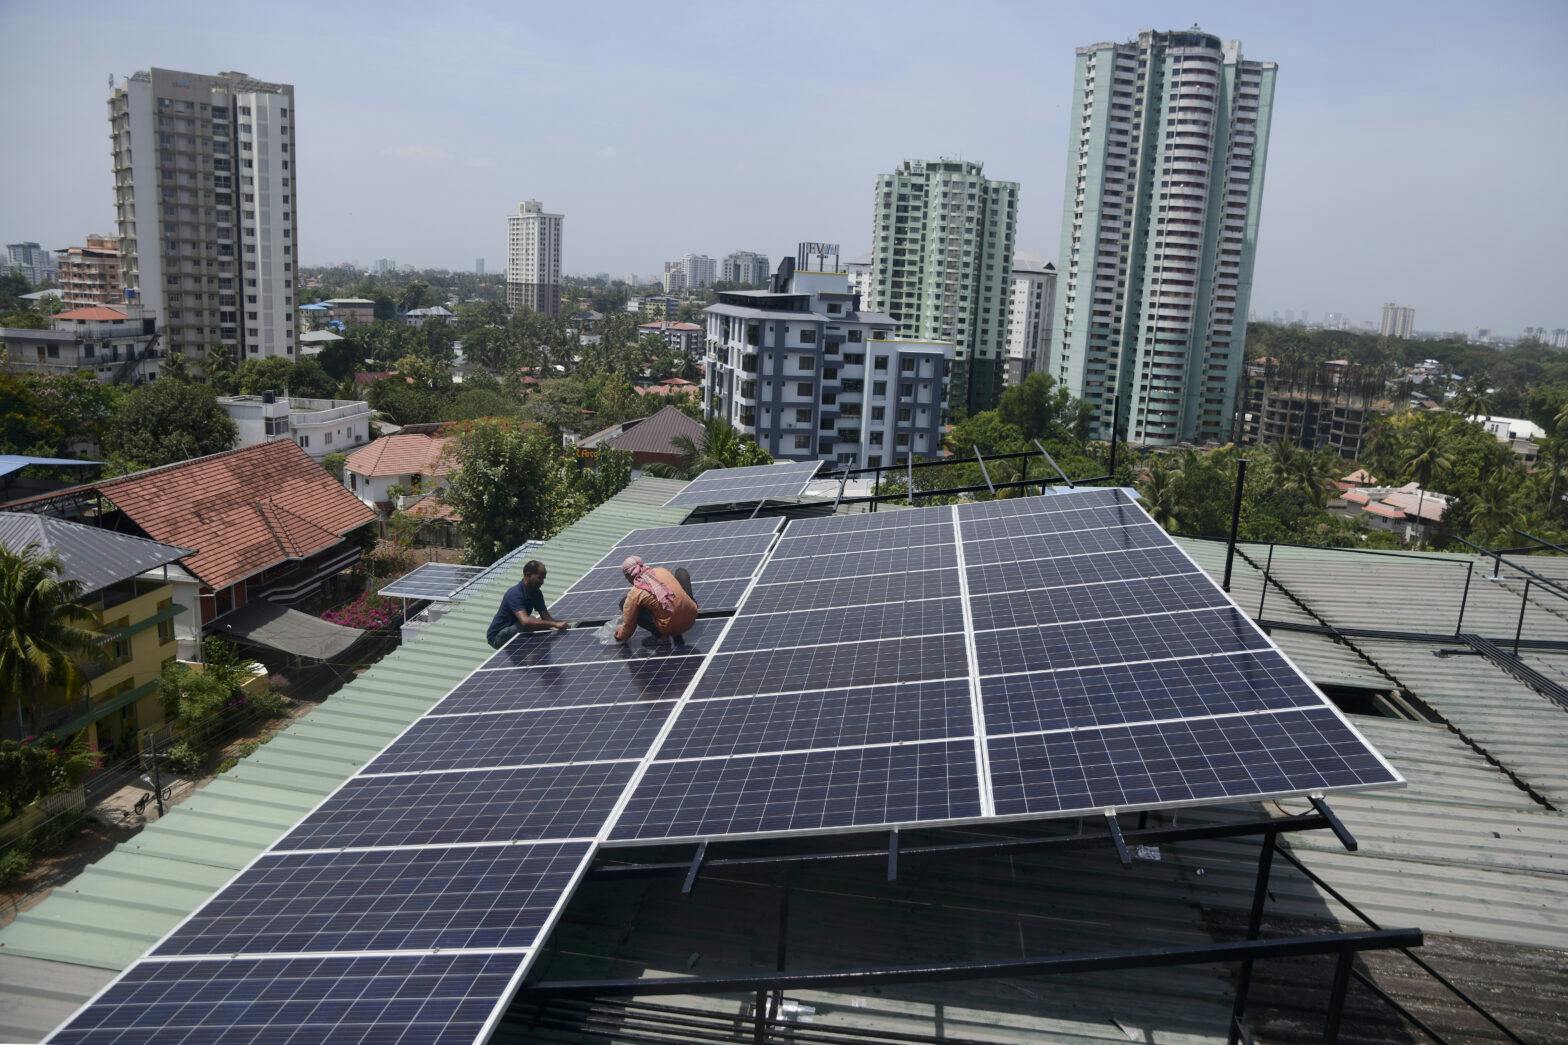 Arbeidere jobber med solceller på toppen av et bygg i en by